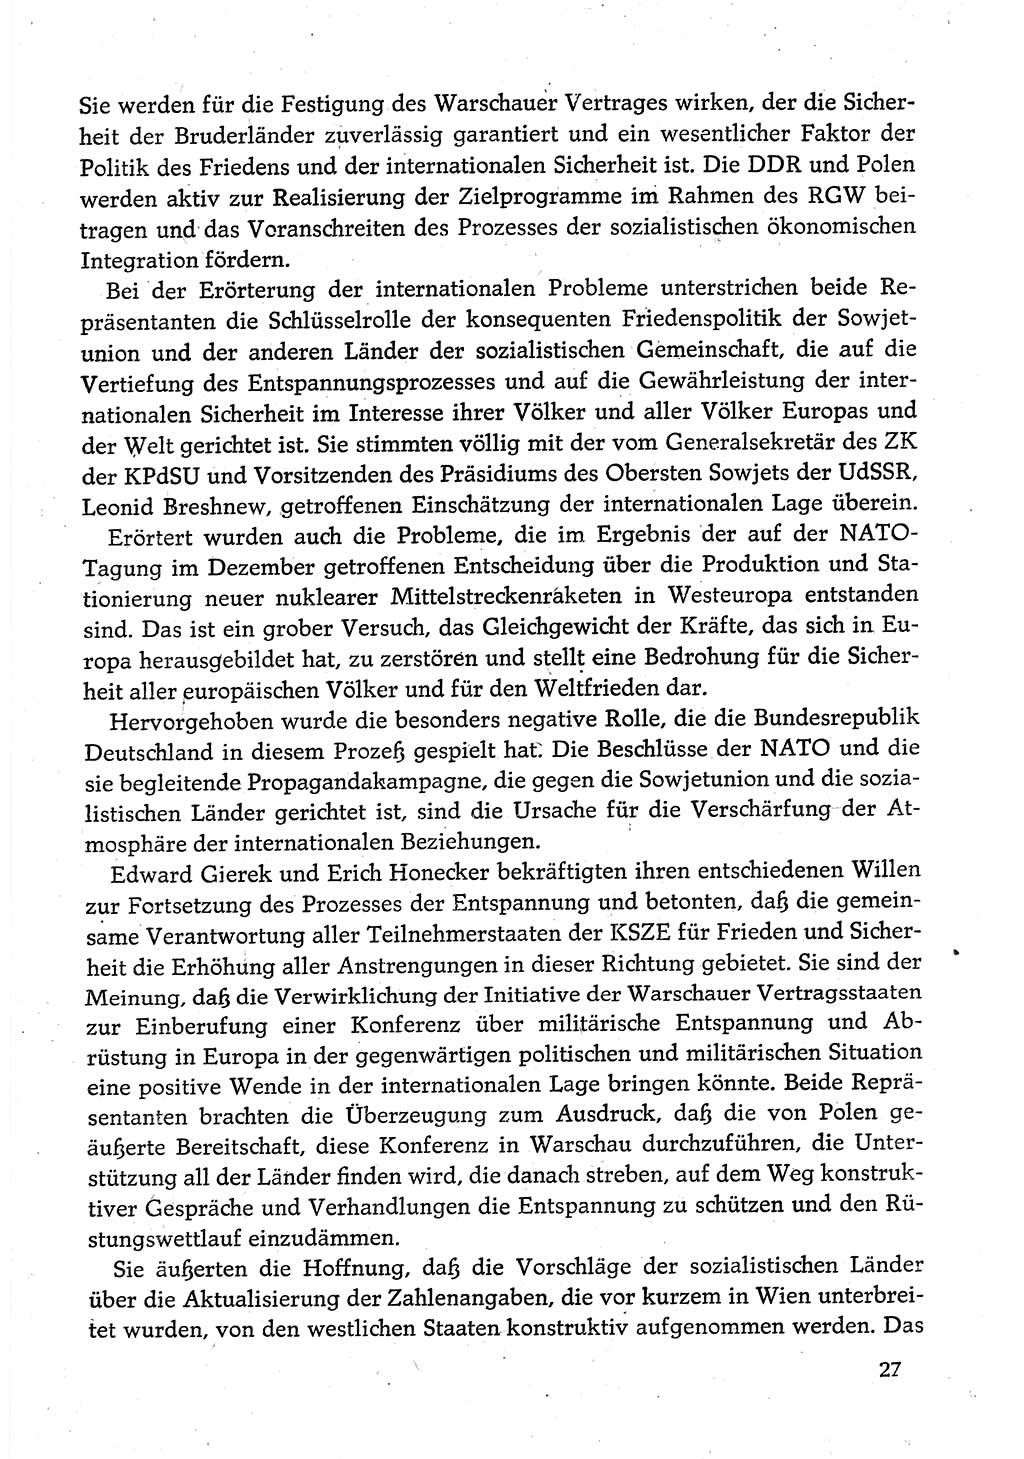 Dokumente der Sozialistischen Einheitspartei Deutschlands (SED) [Deutsche Demokratische Republik (DDR)] 1980-1981, Seite 27 (Dok. SED DDR 1980-1981, S. 27)